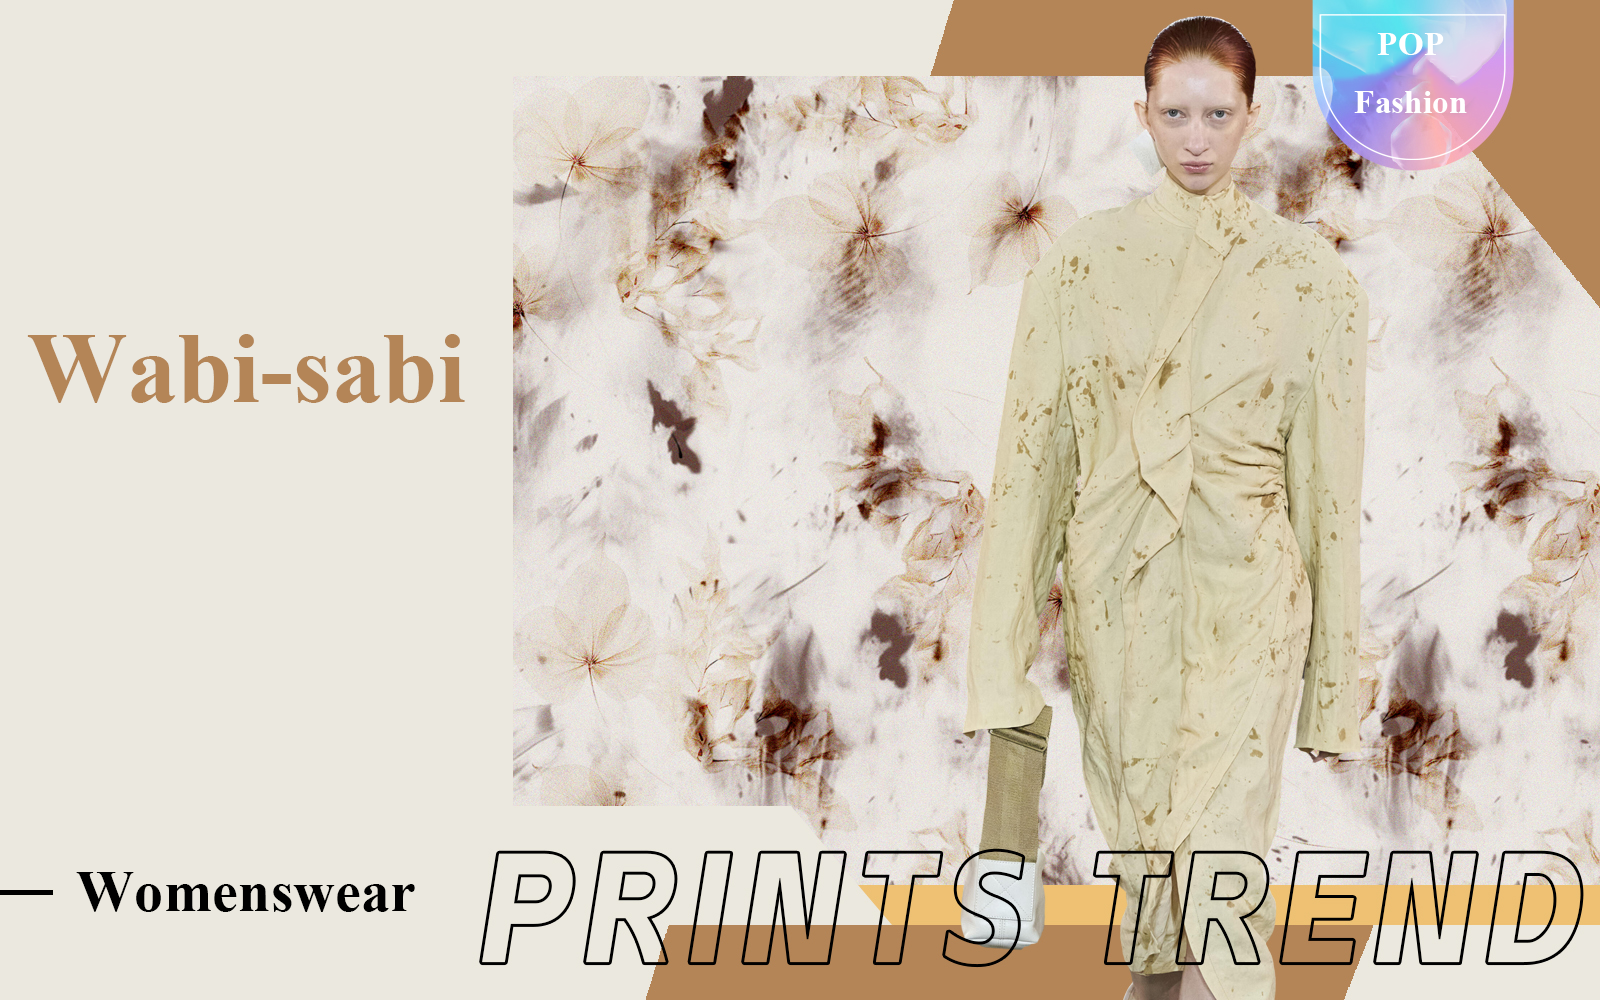 Wabi-sabi -- The Pattern Trend for Womenswear